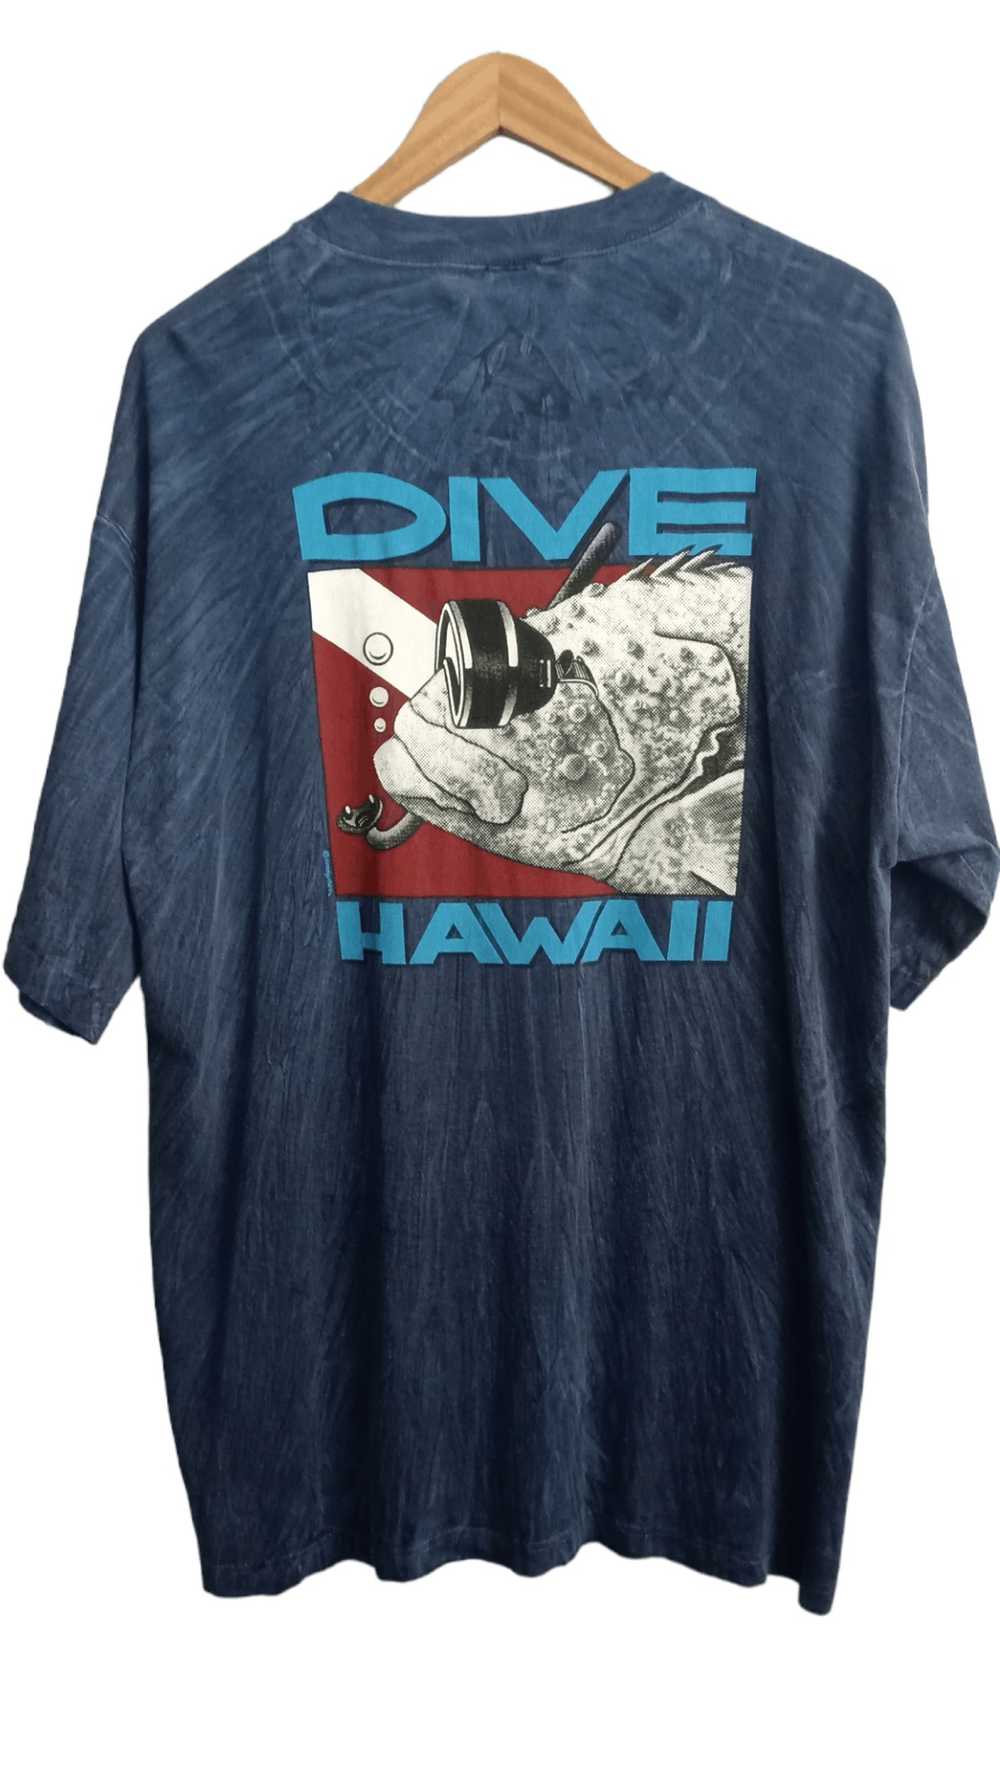 Crazy Shirts × Vintage Crazy shirt Hawaii tee - image 1